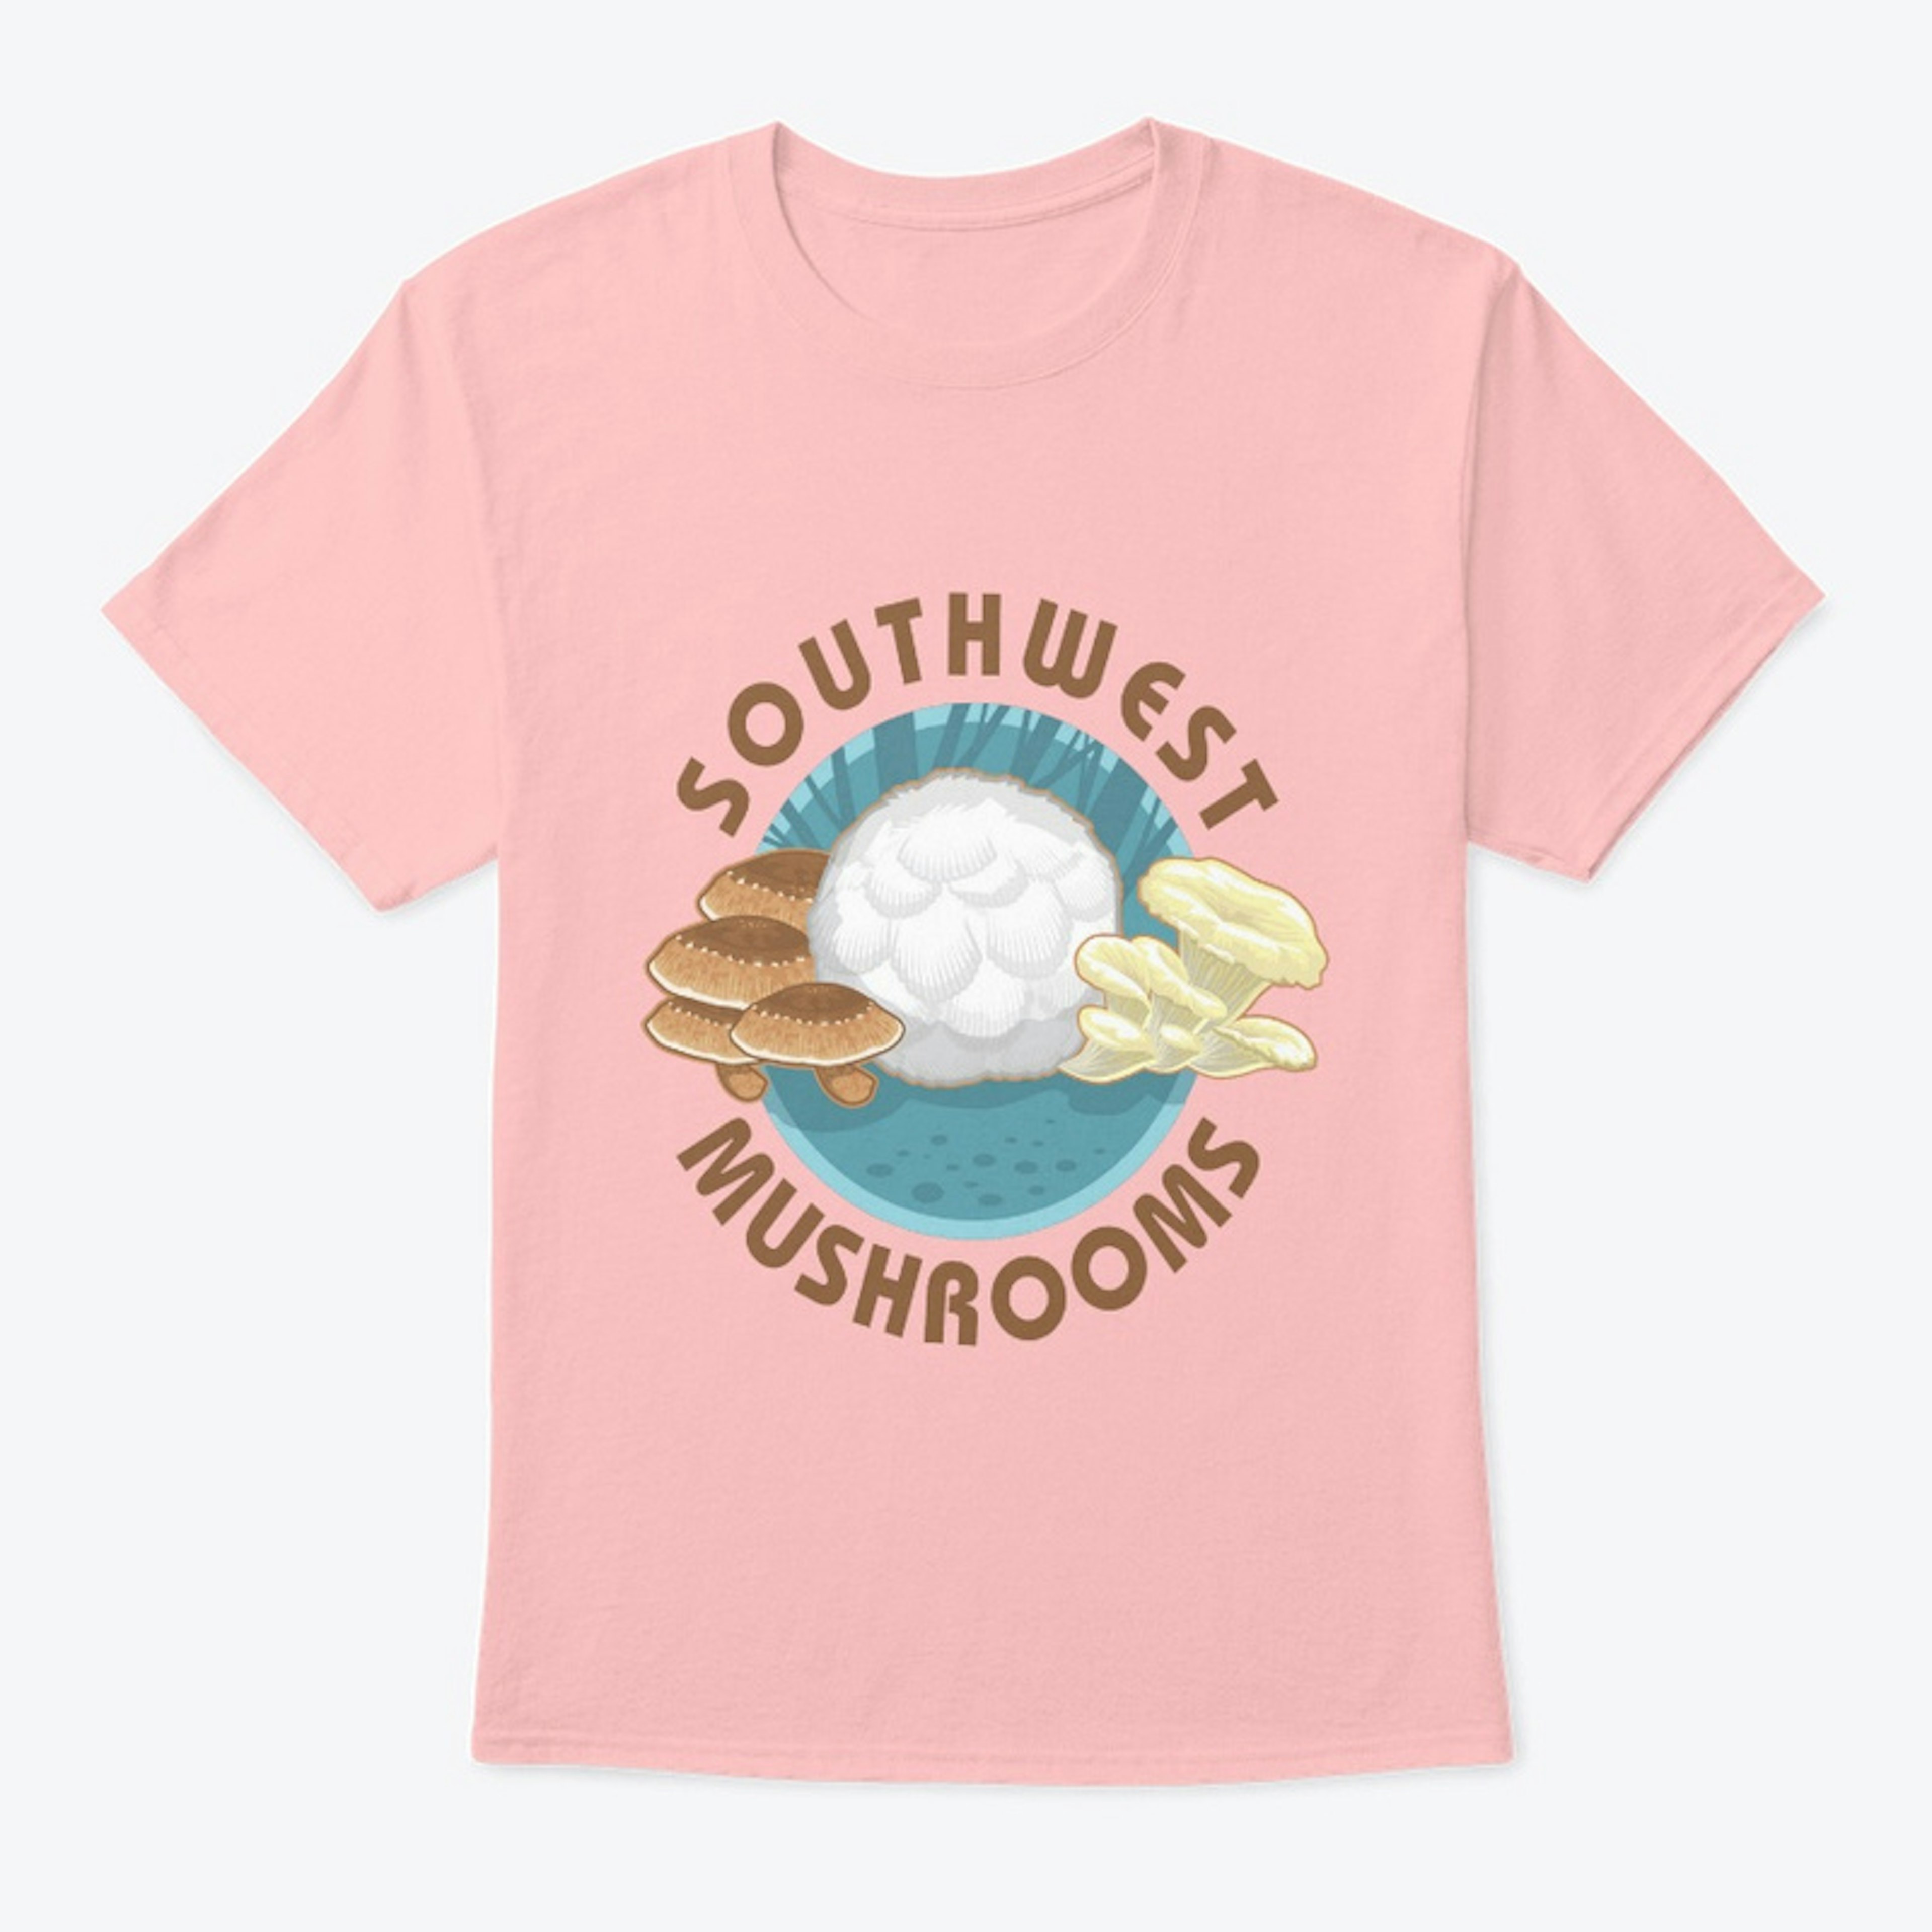 Southwest Mushrooms 